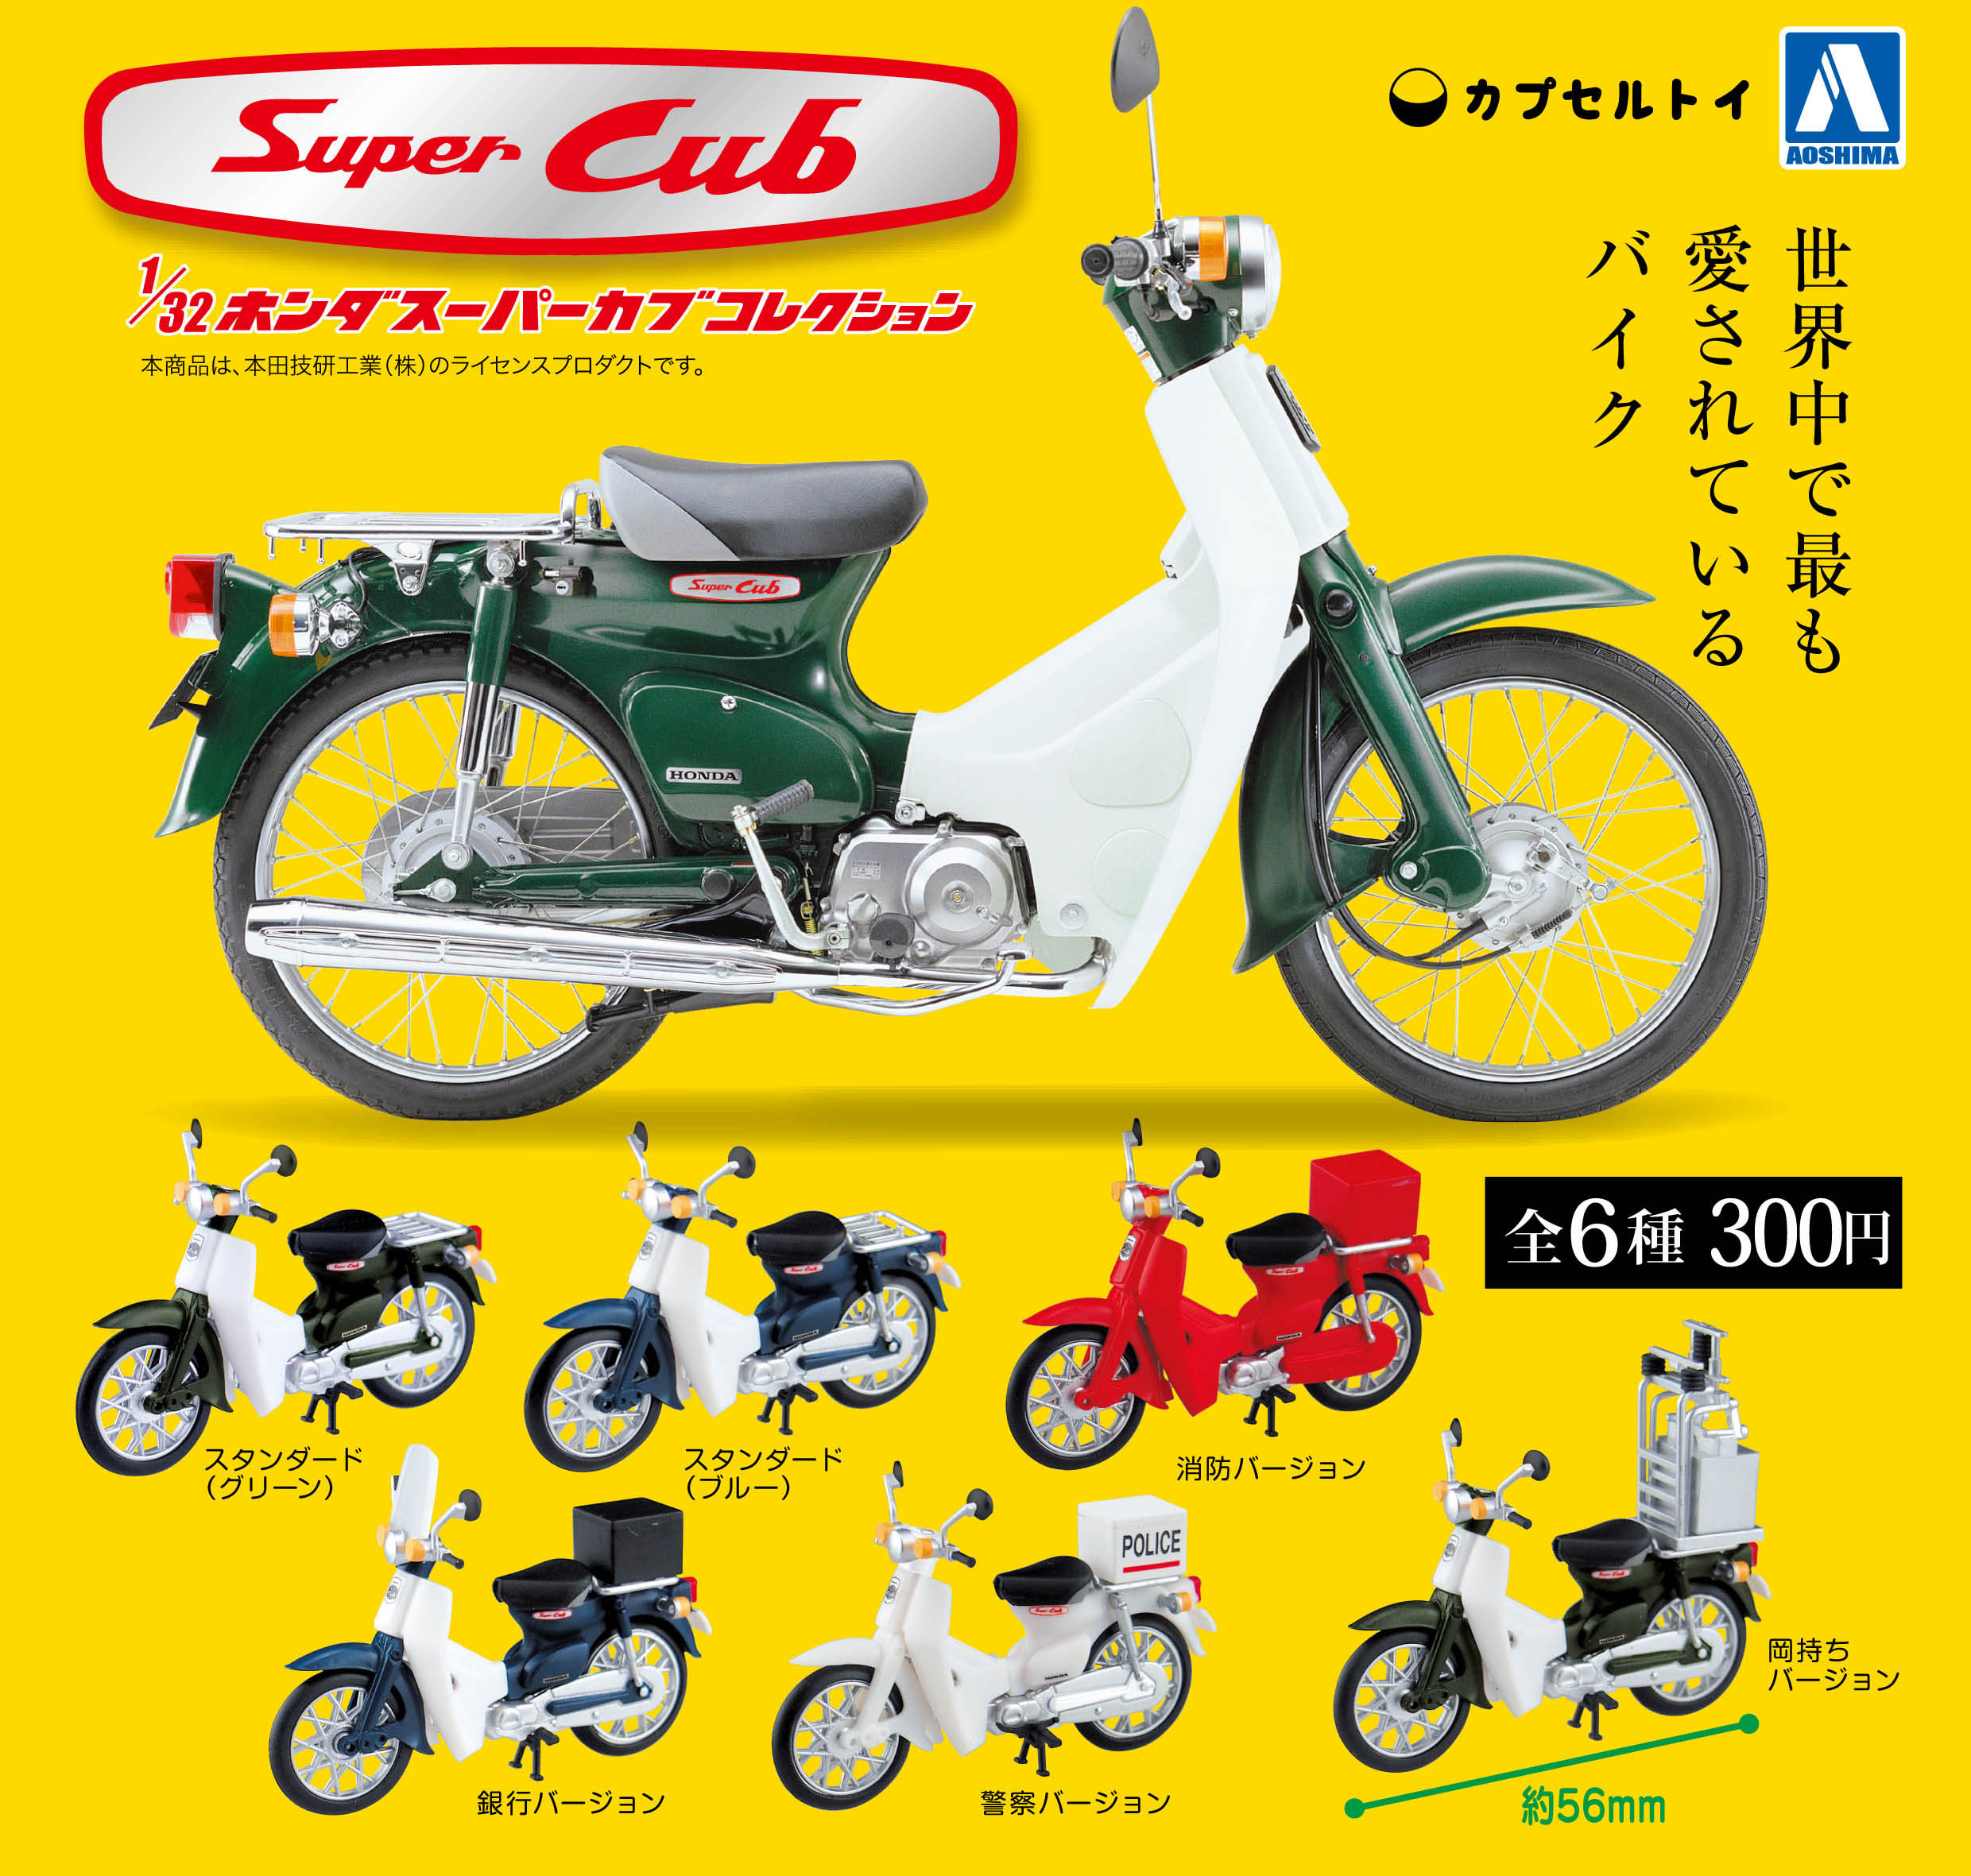 300日元扭蛋 机车模型 Super Cub合集 全6种  098967